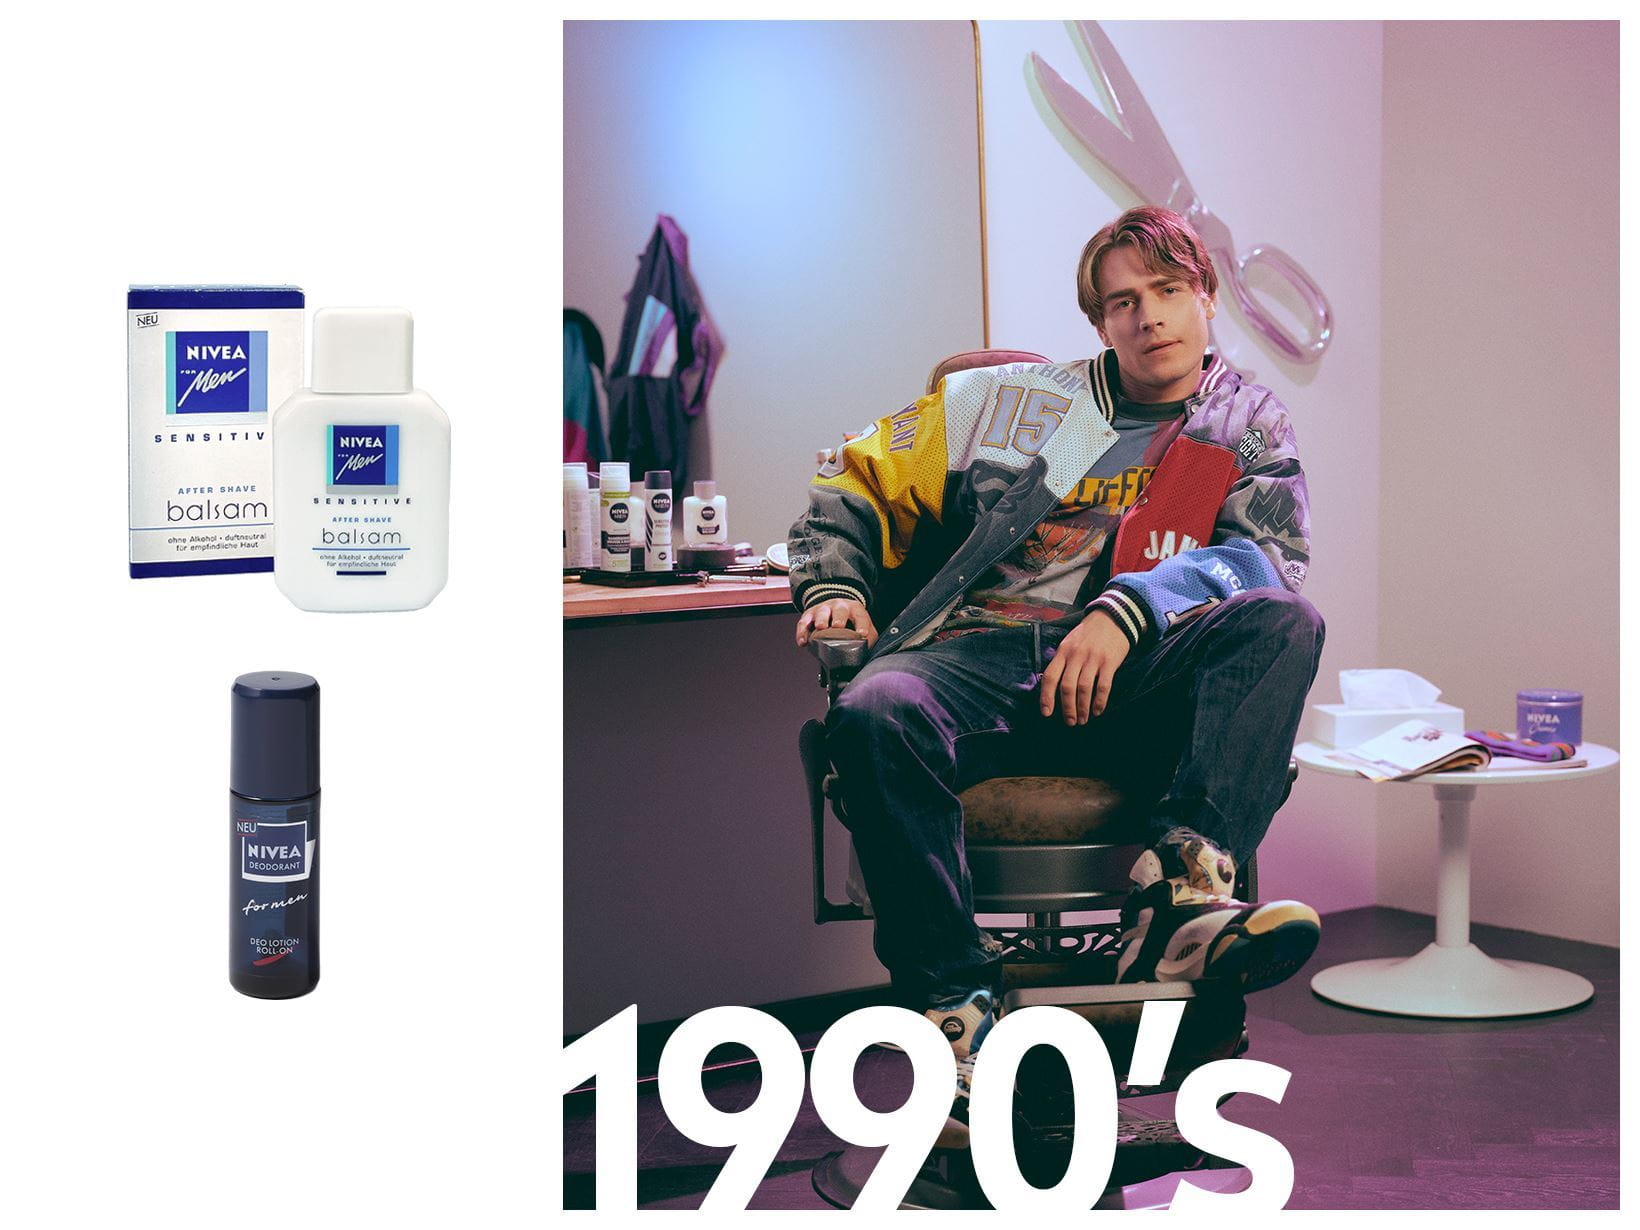 De jaren 90 van de vorige eeuw